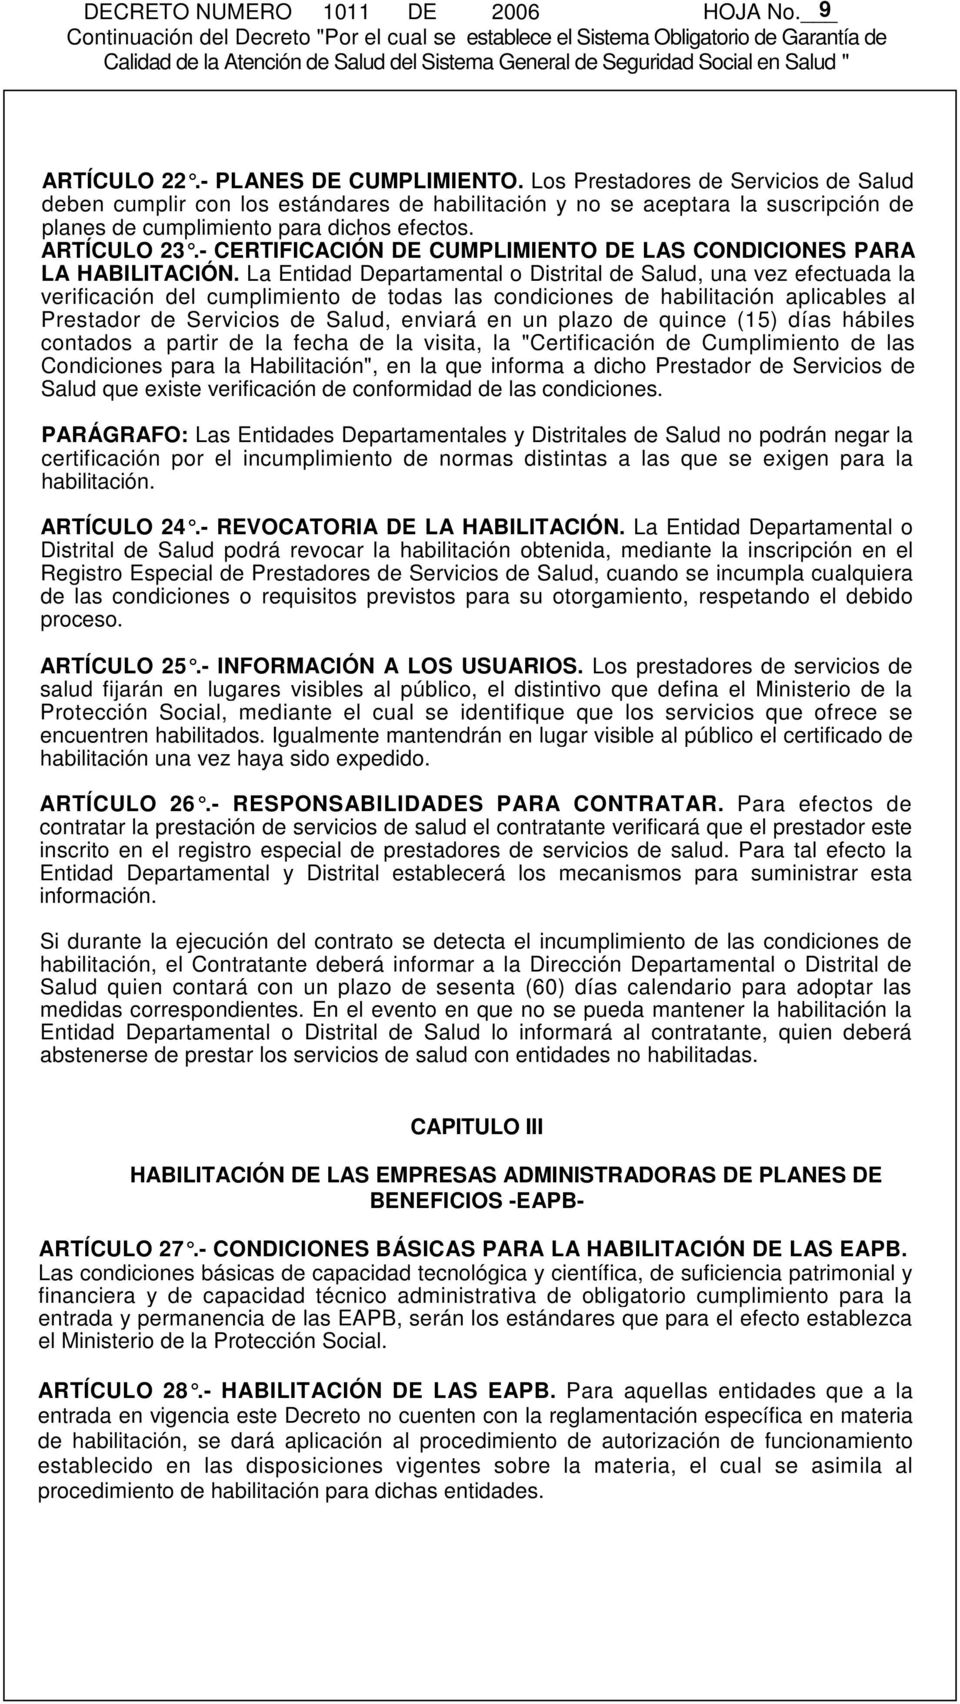 - CERTIFICACIÓN DE CUMPLIMIENTO DE LAS CONDICIONES PARA LA HABILITACIÓN.